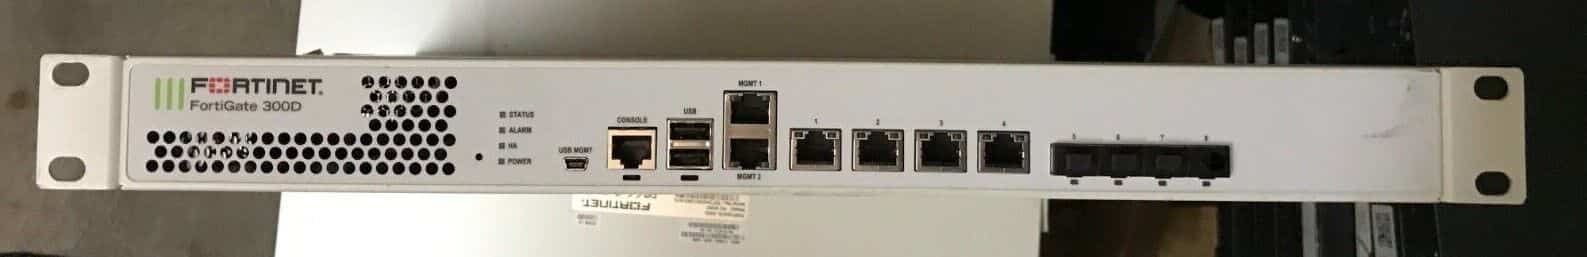 Fortinet-FG-300d-Fortigate-300d-Network-Security-Firewall-Appliance-185493767472.jpg